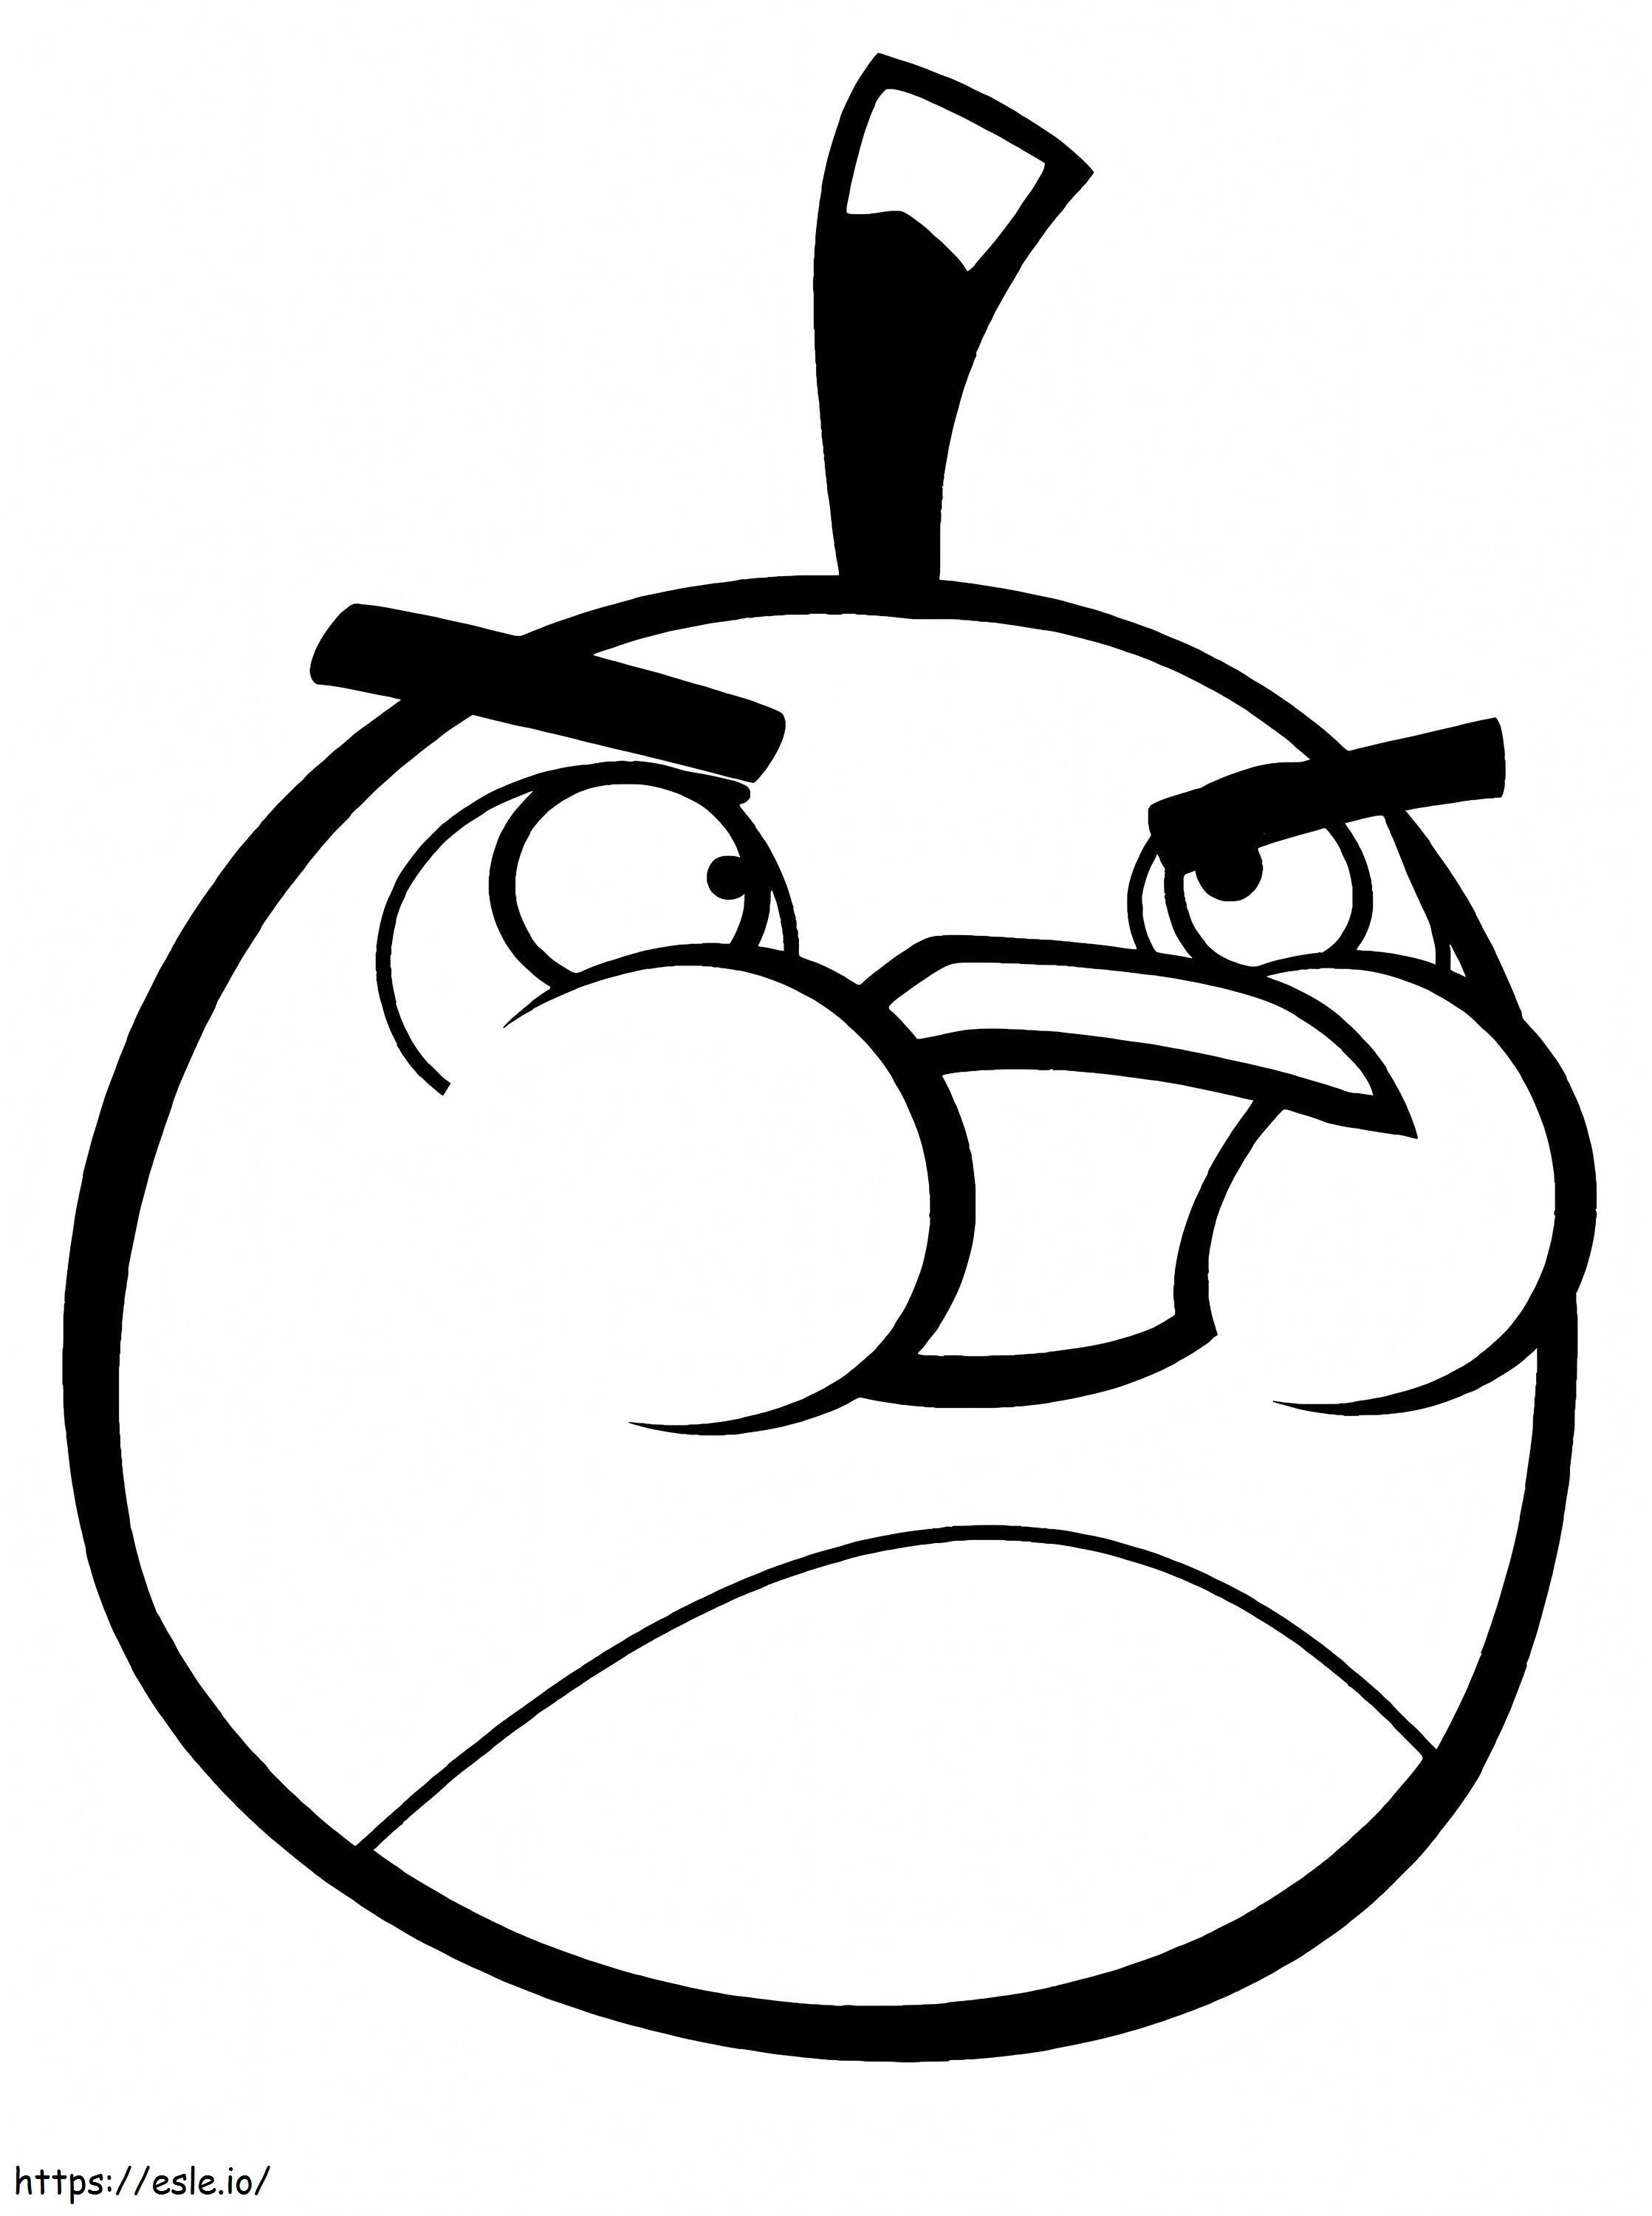 1554109371 Gioco Colorazione Angry Bird Salva Bomba The Black Bird Of Gioco Colorazione Angry Bird da colorare